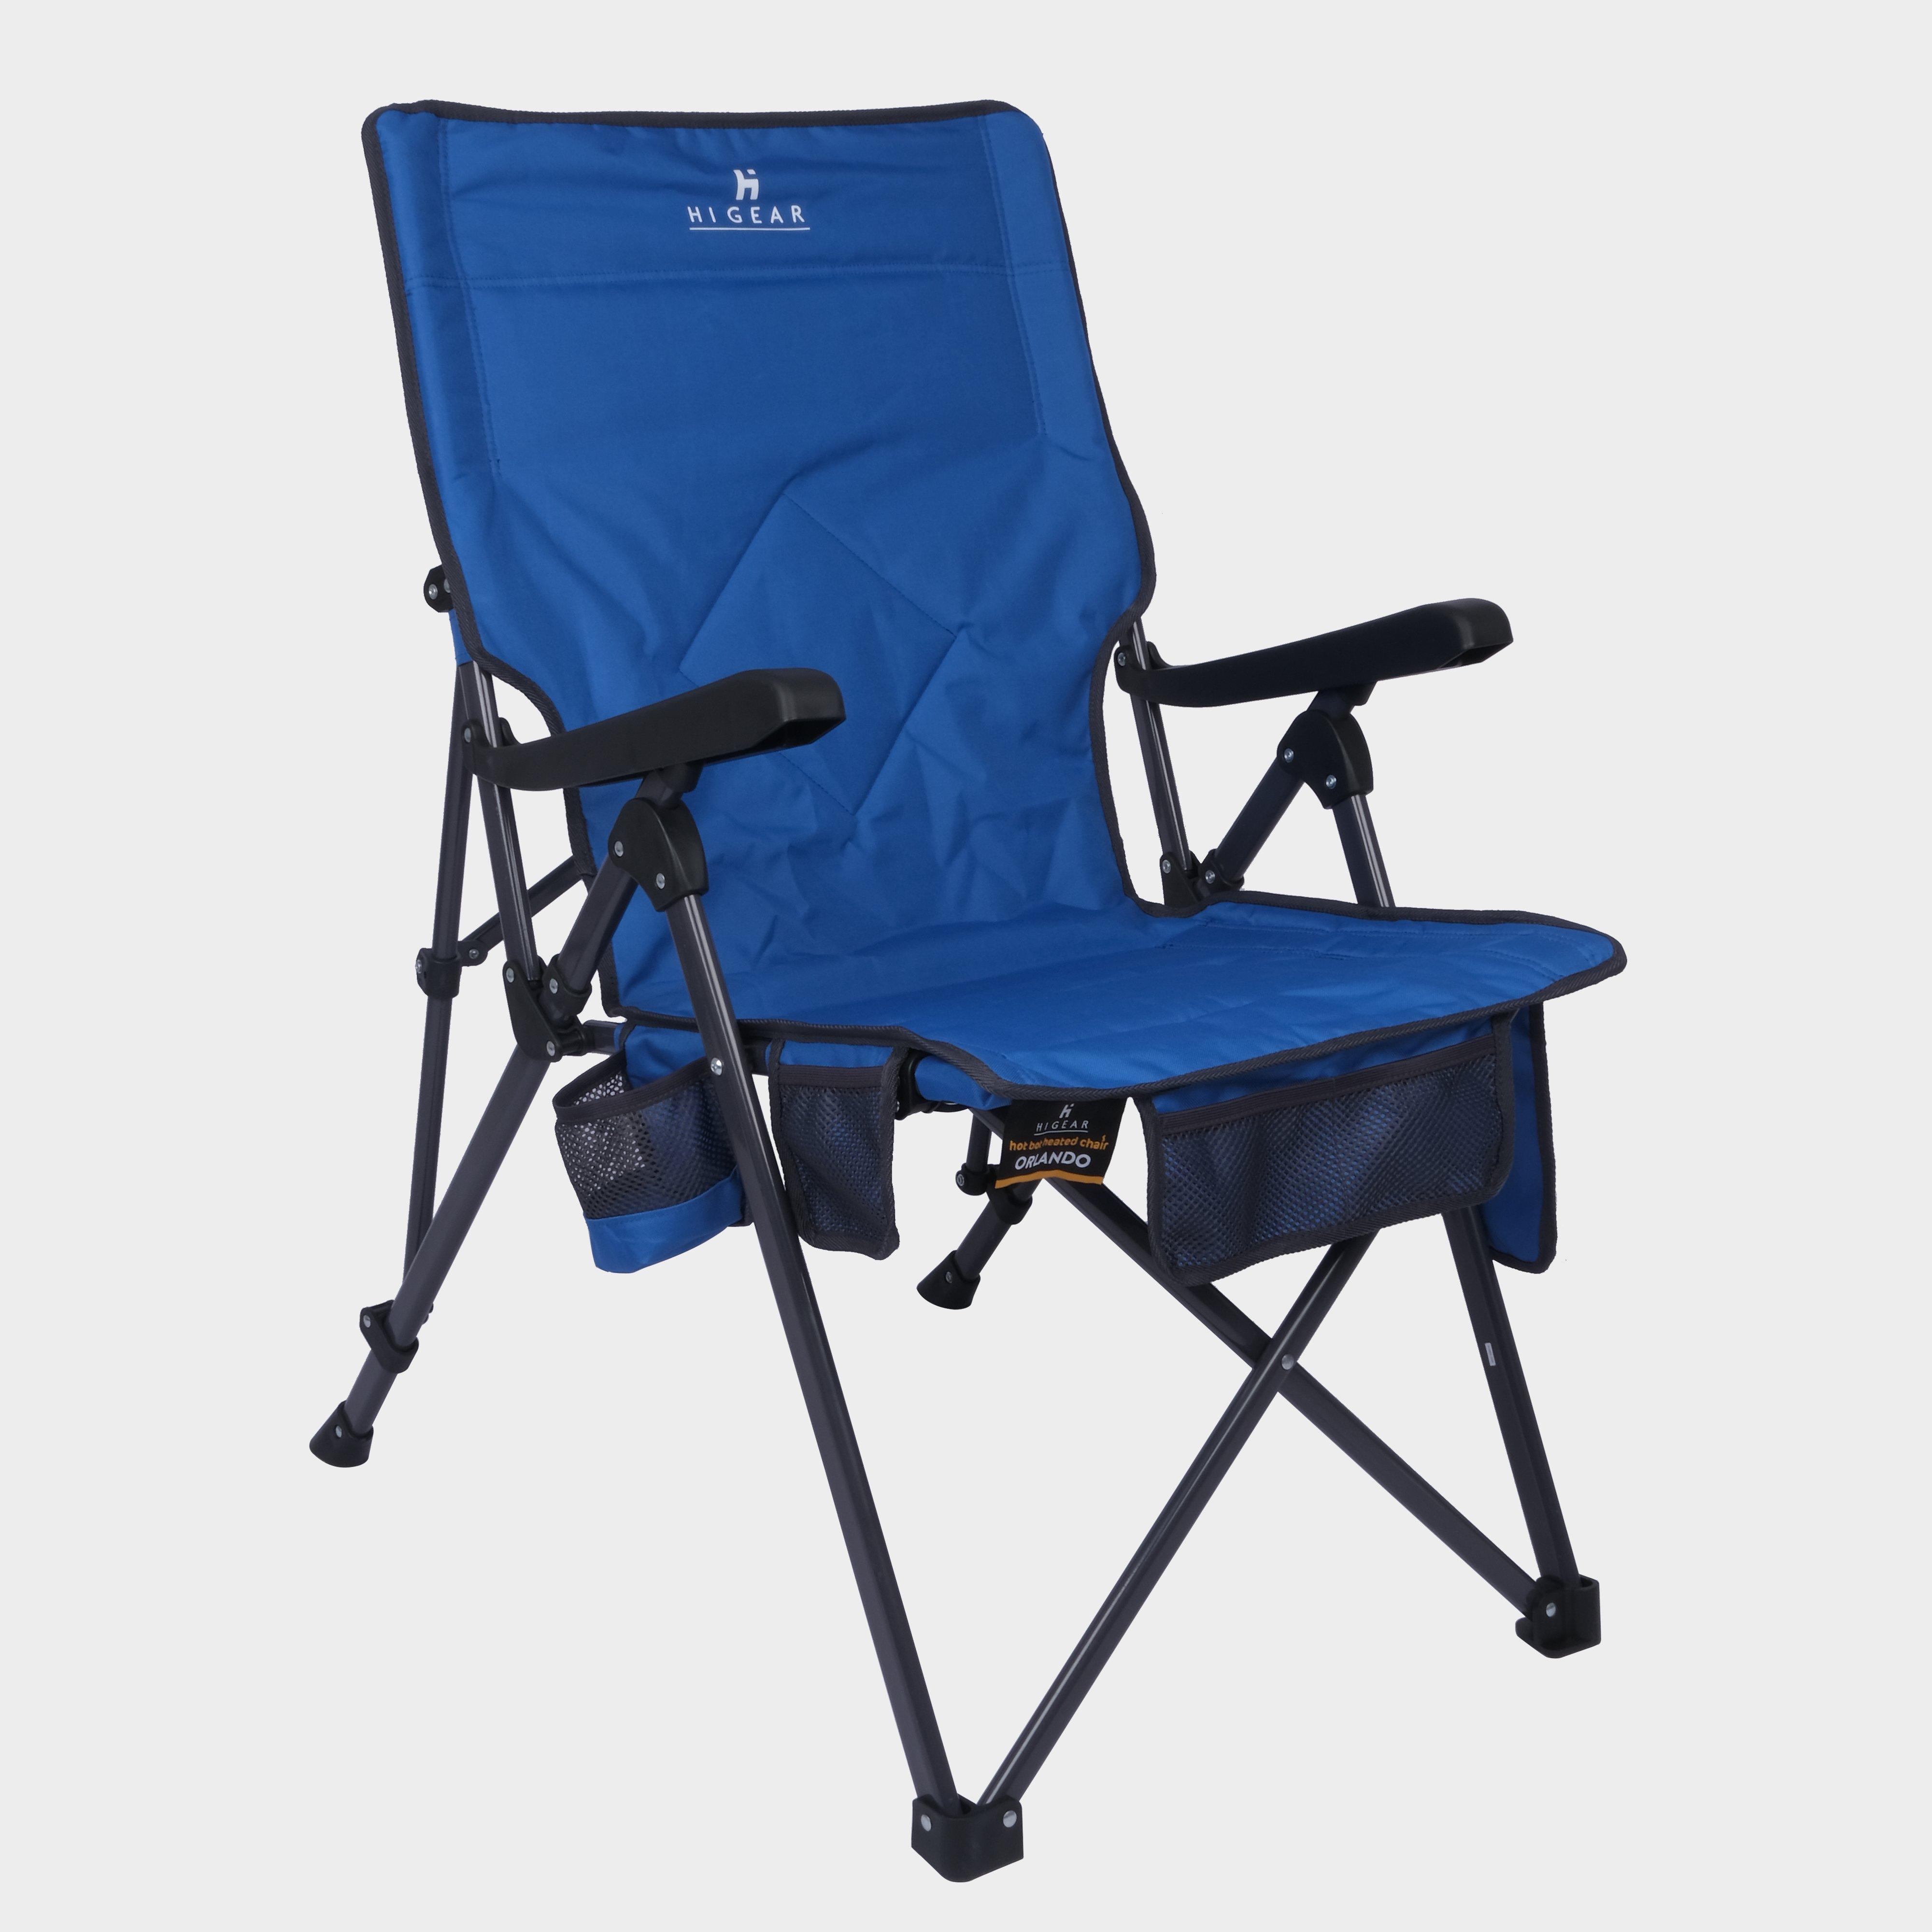 Hi-gear Orlando Heated Recliner Chair  Blue